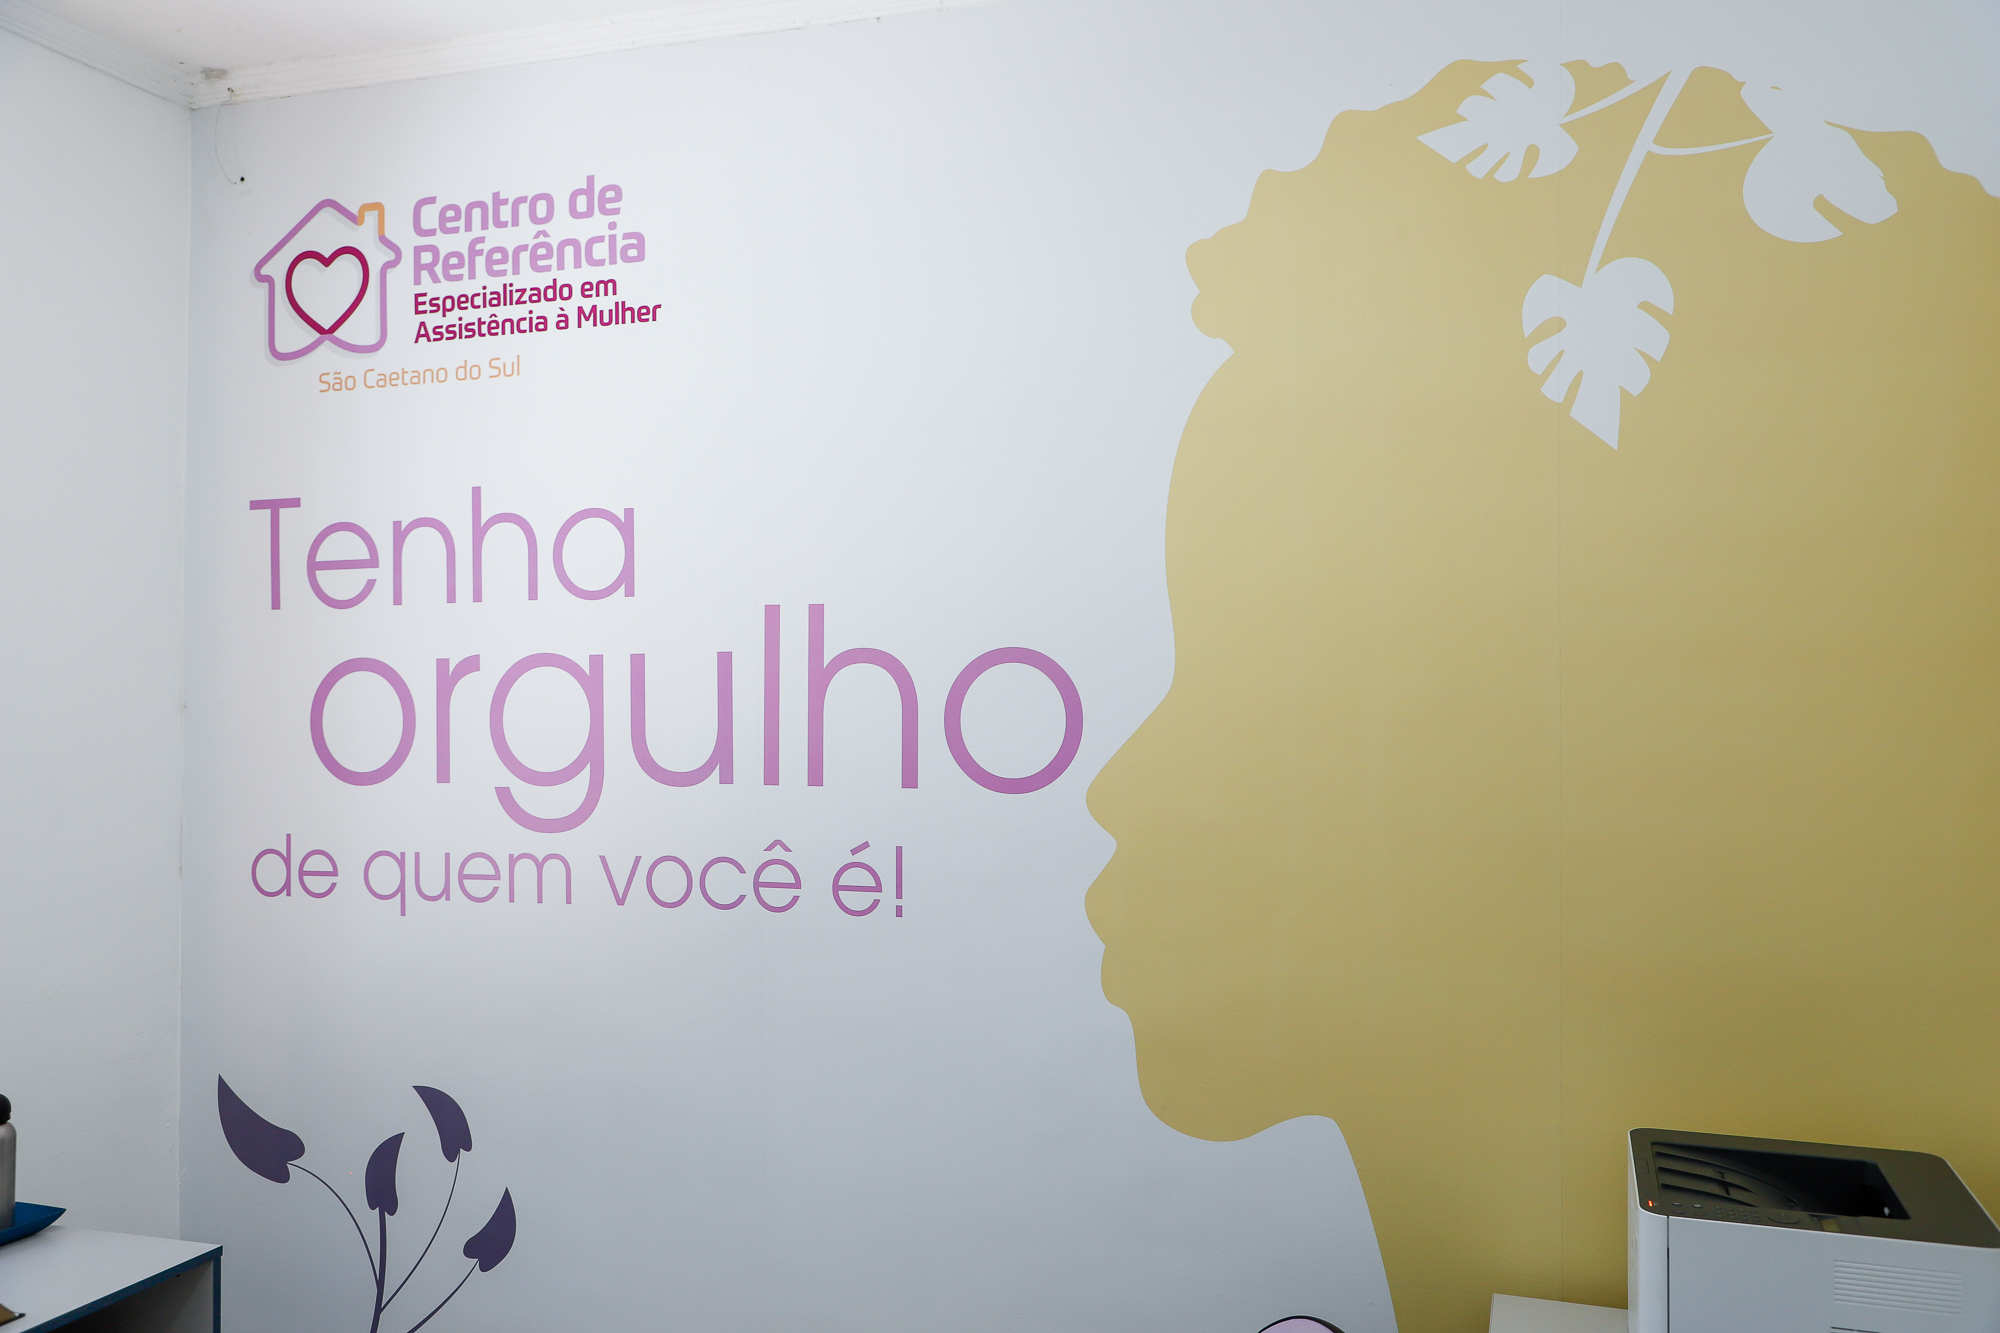 Centro de Referência Especializado em Assistência à Mulher de São Caetano realiza 100 atendimentos em 2023